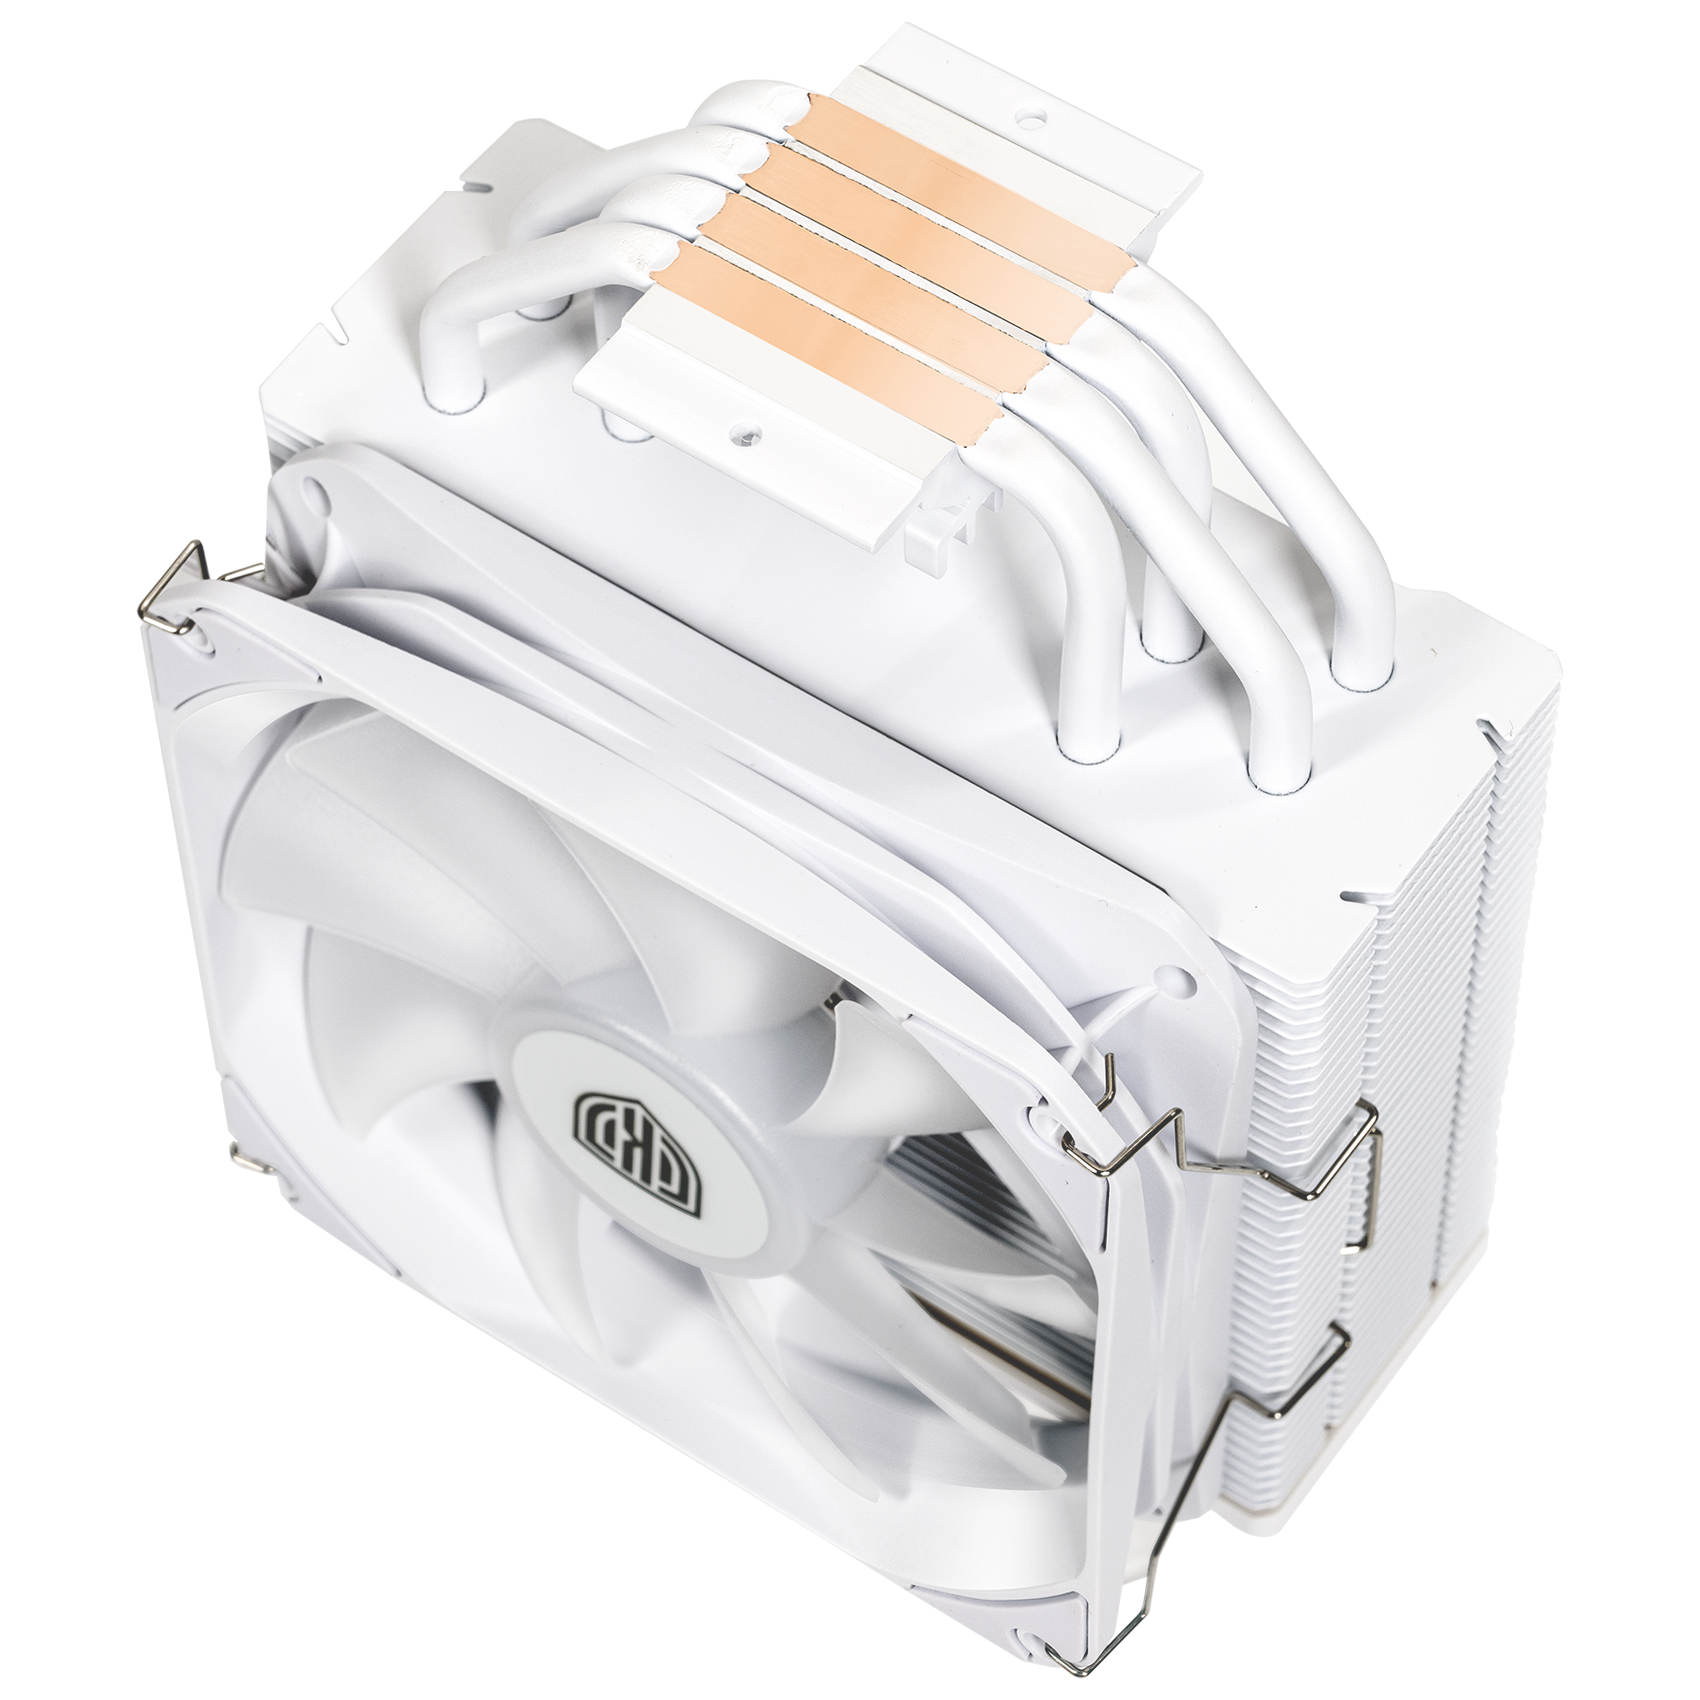 Kolink - Kolink Umbra EX180 ARGB White CPU Cooler - 120mm